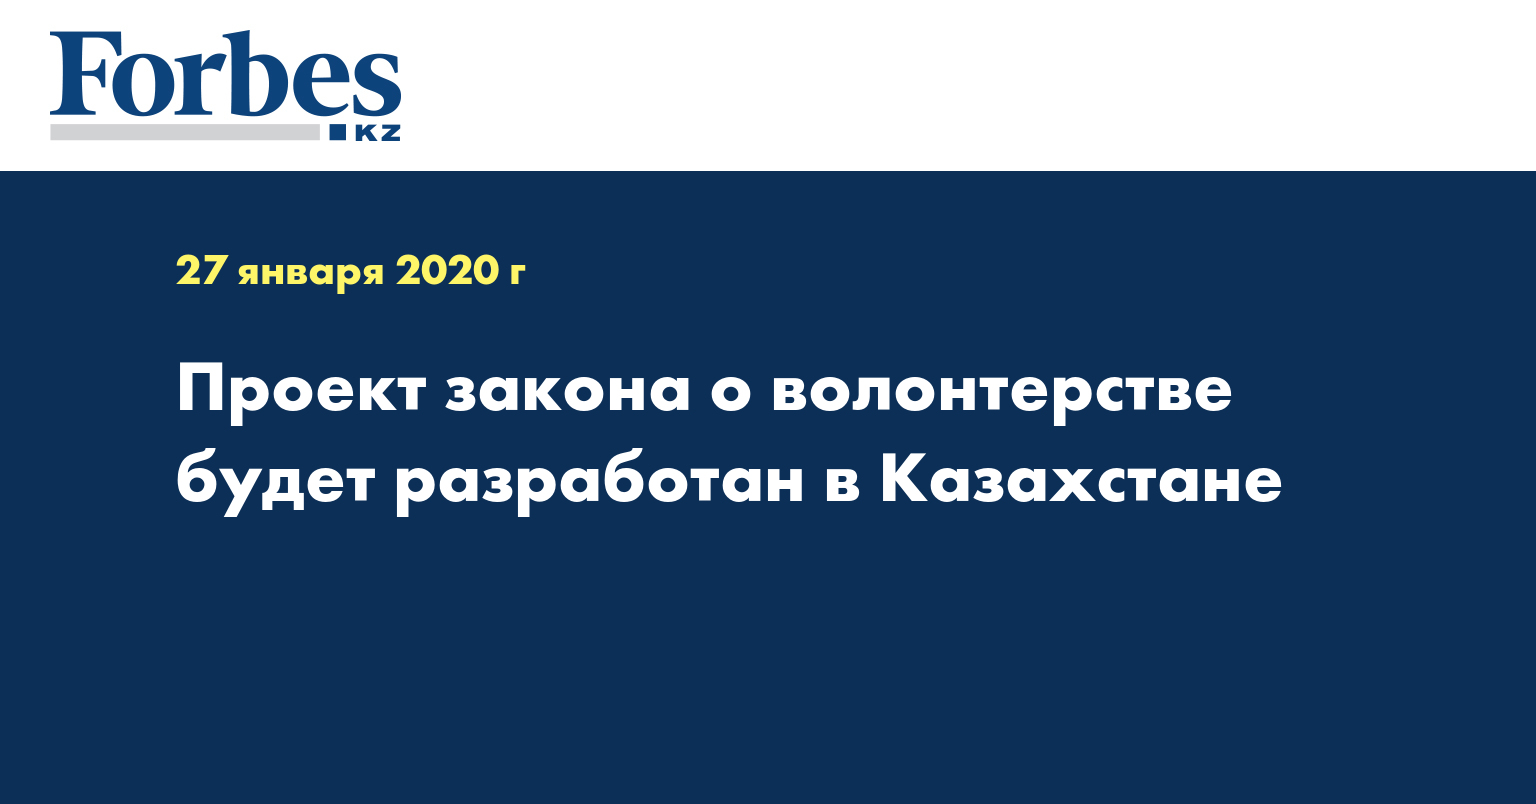 Проект закона о волонтерстве будет разработан в Казахстане